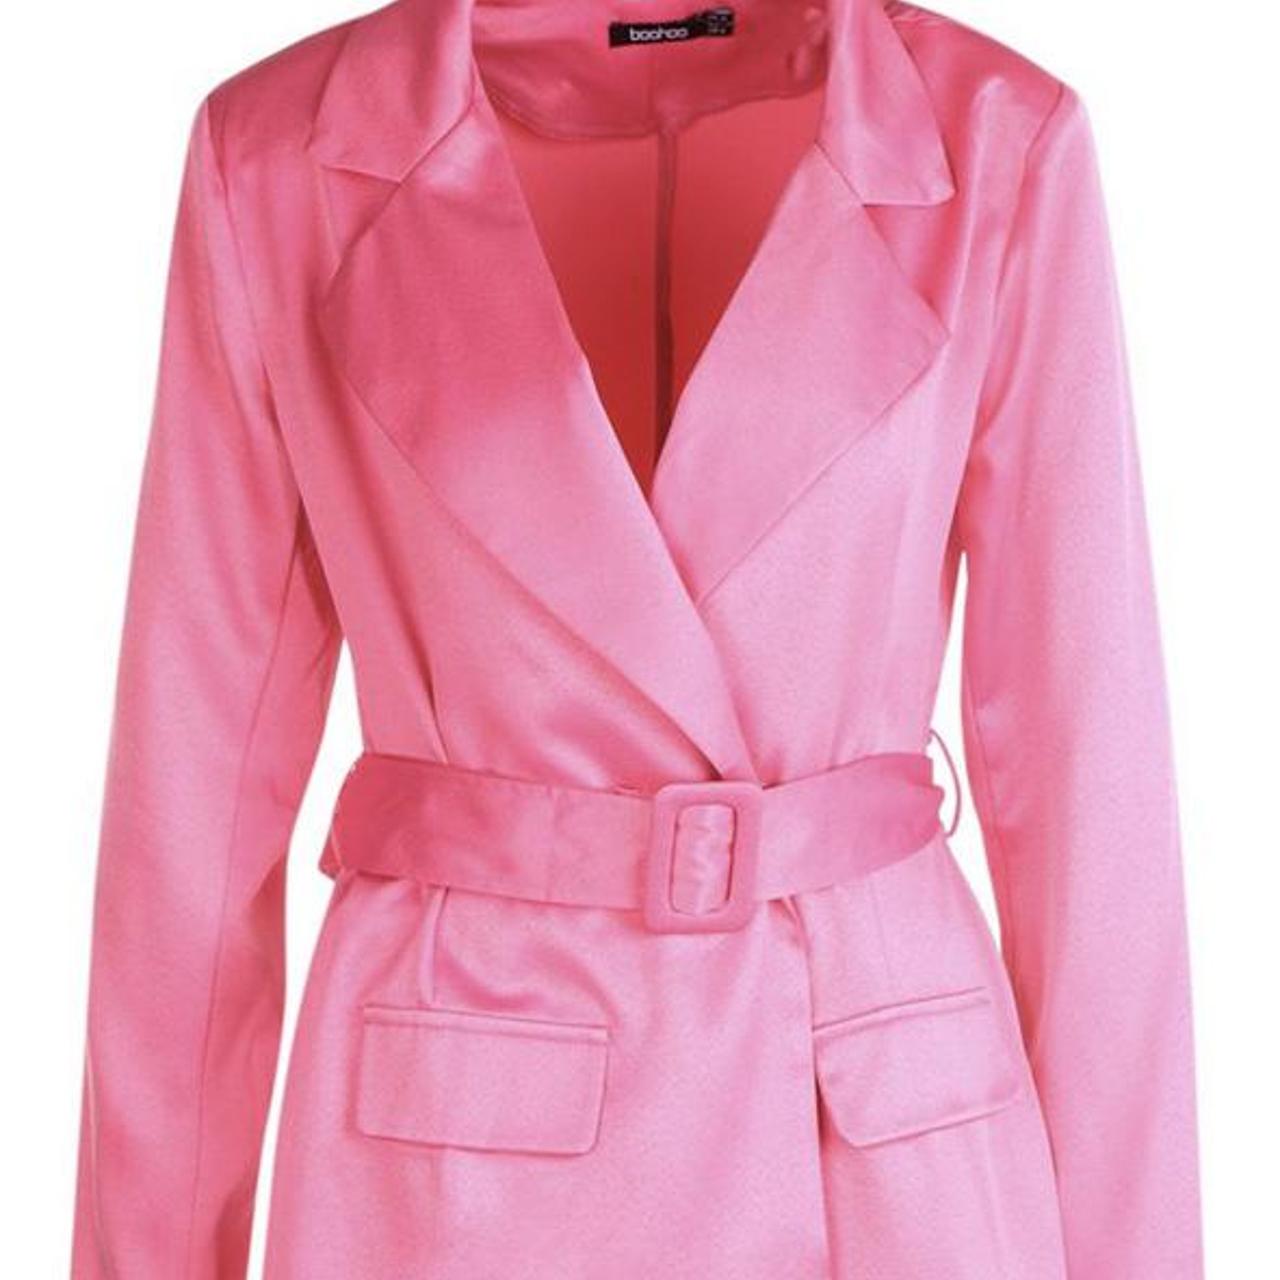 Boohoo pink satin belted blazer playsuit 💗 U.K. size... - Depop